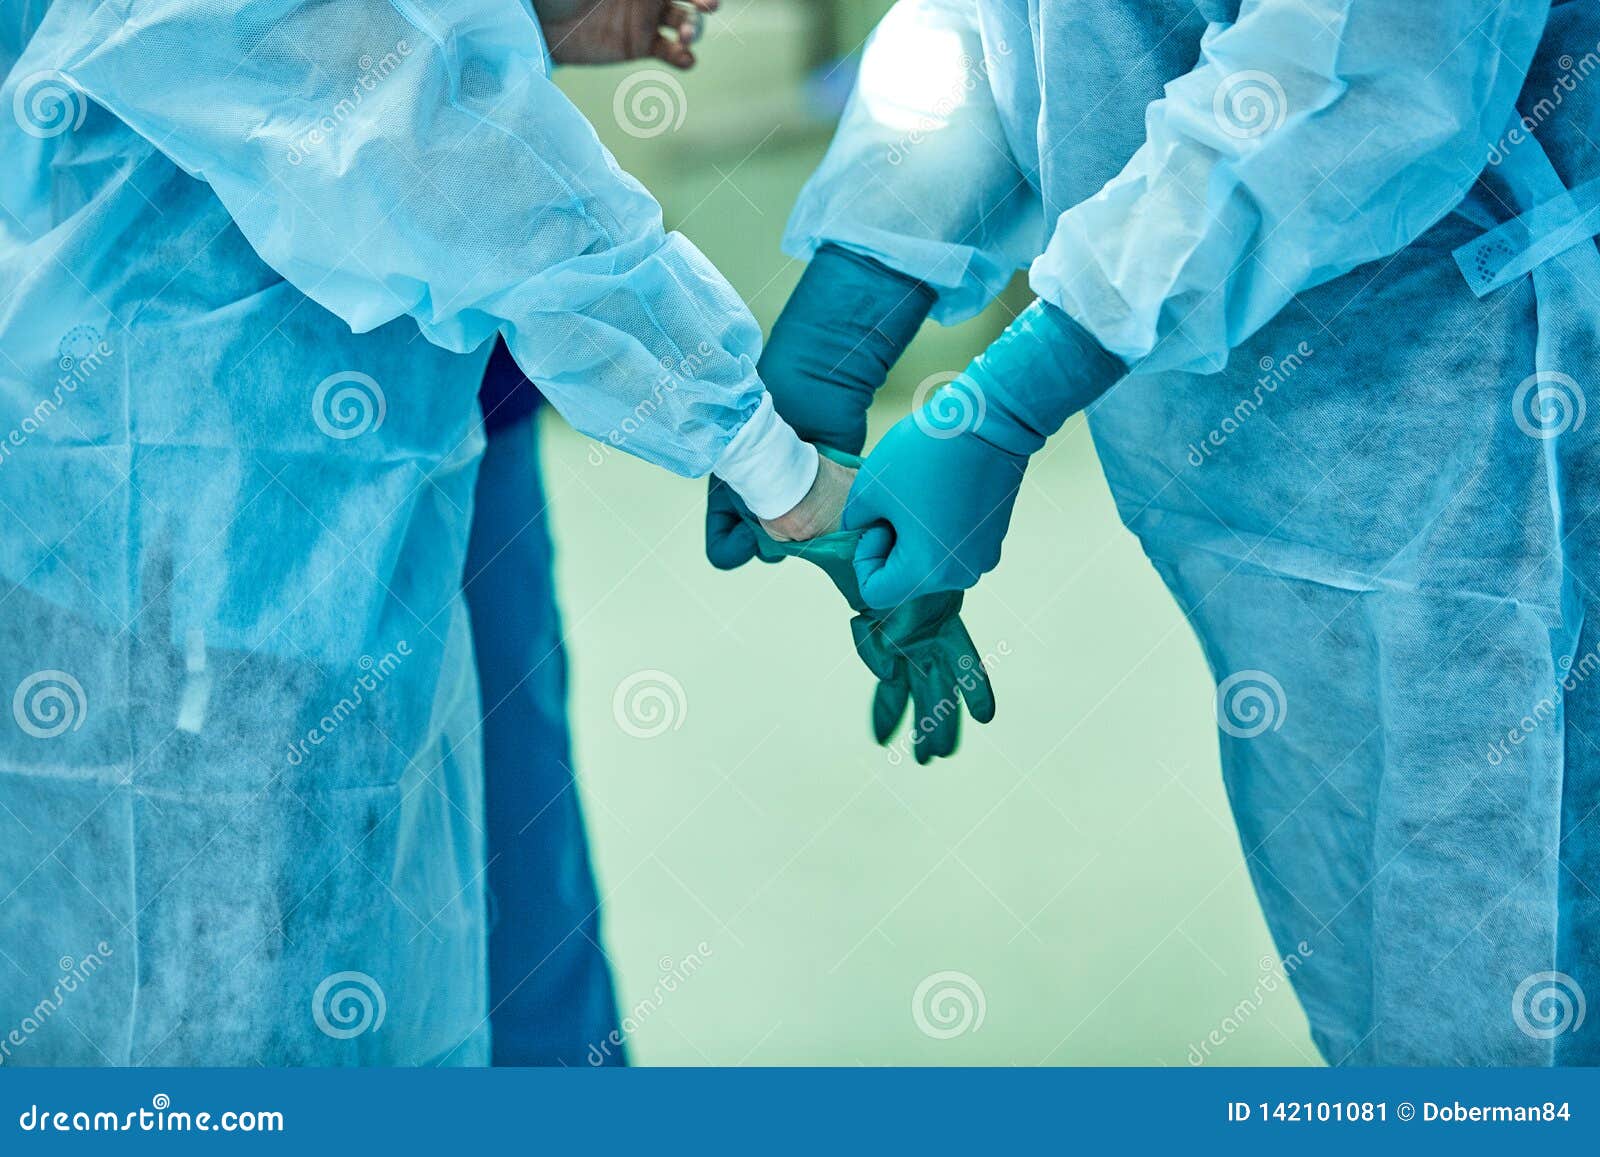 Подготовка рук к операции. Надевание стерильных перчаток на хирурга. Перчатки в операционной. Одевание перчаток хирургу. Стерильные перчатки для хирурга.